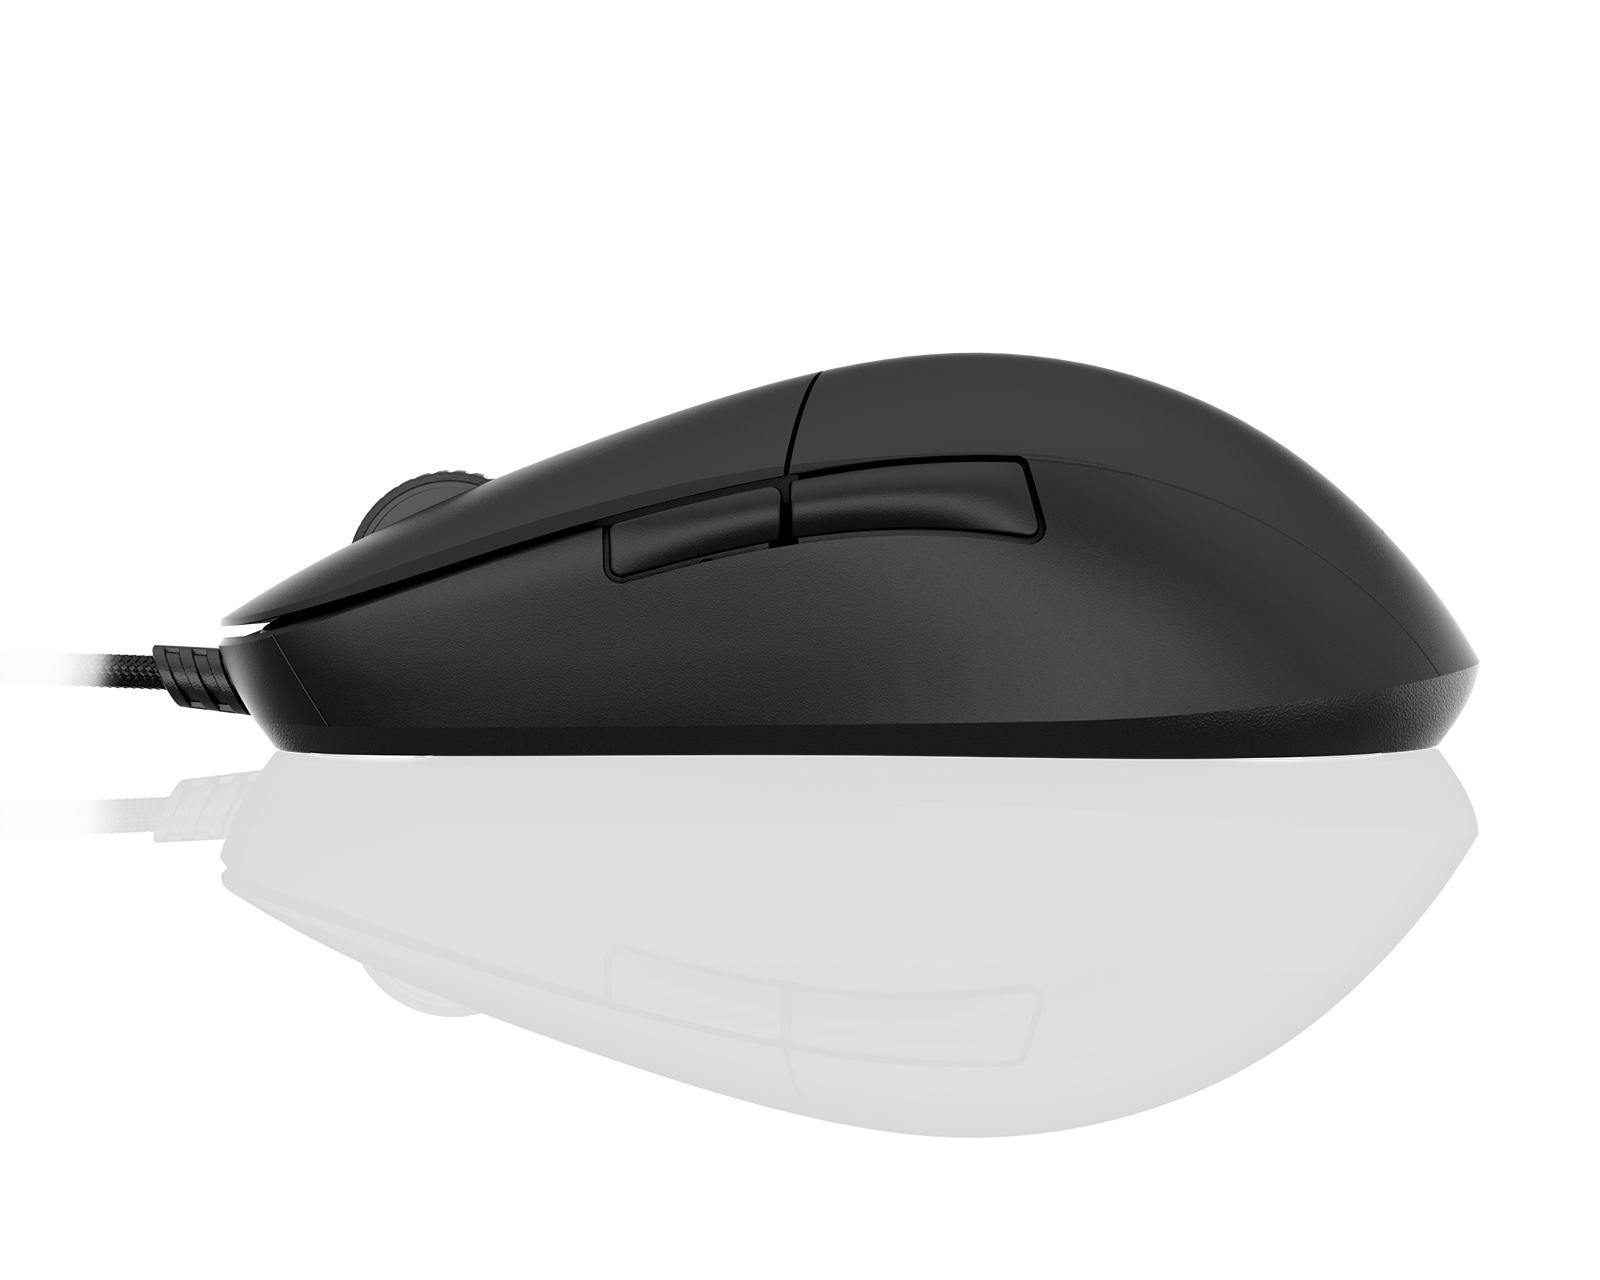 Buy Endgame Gear Xm1r Gaming Mouse Black At Maxgaming Com